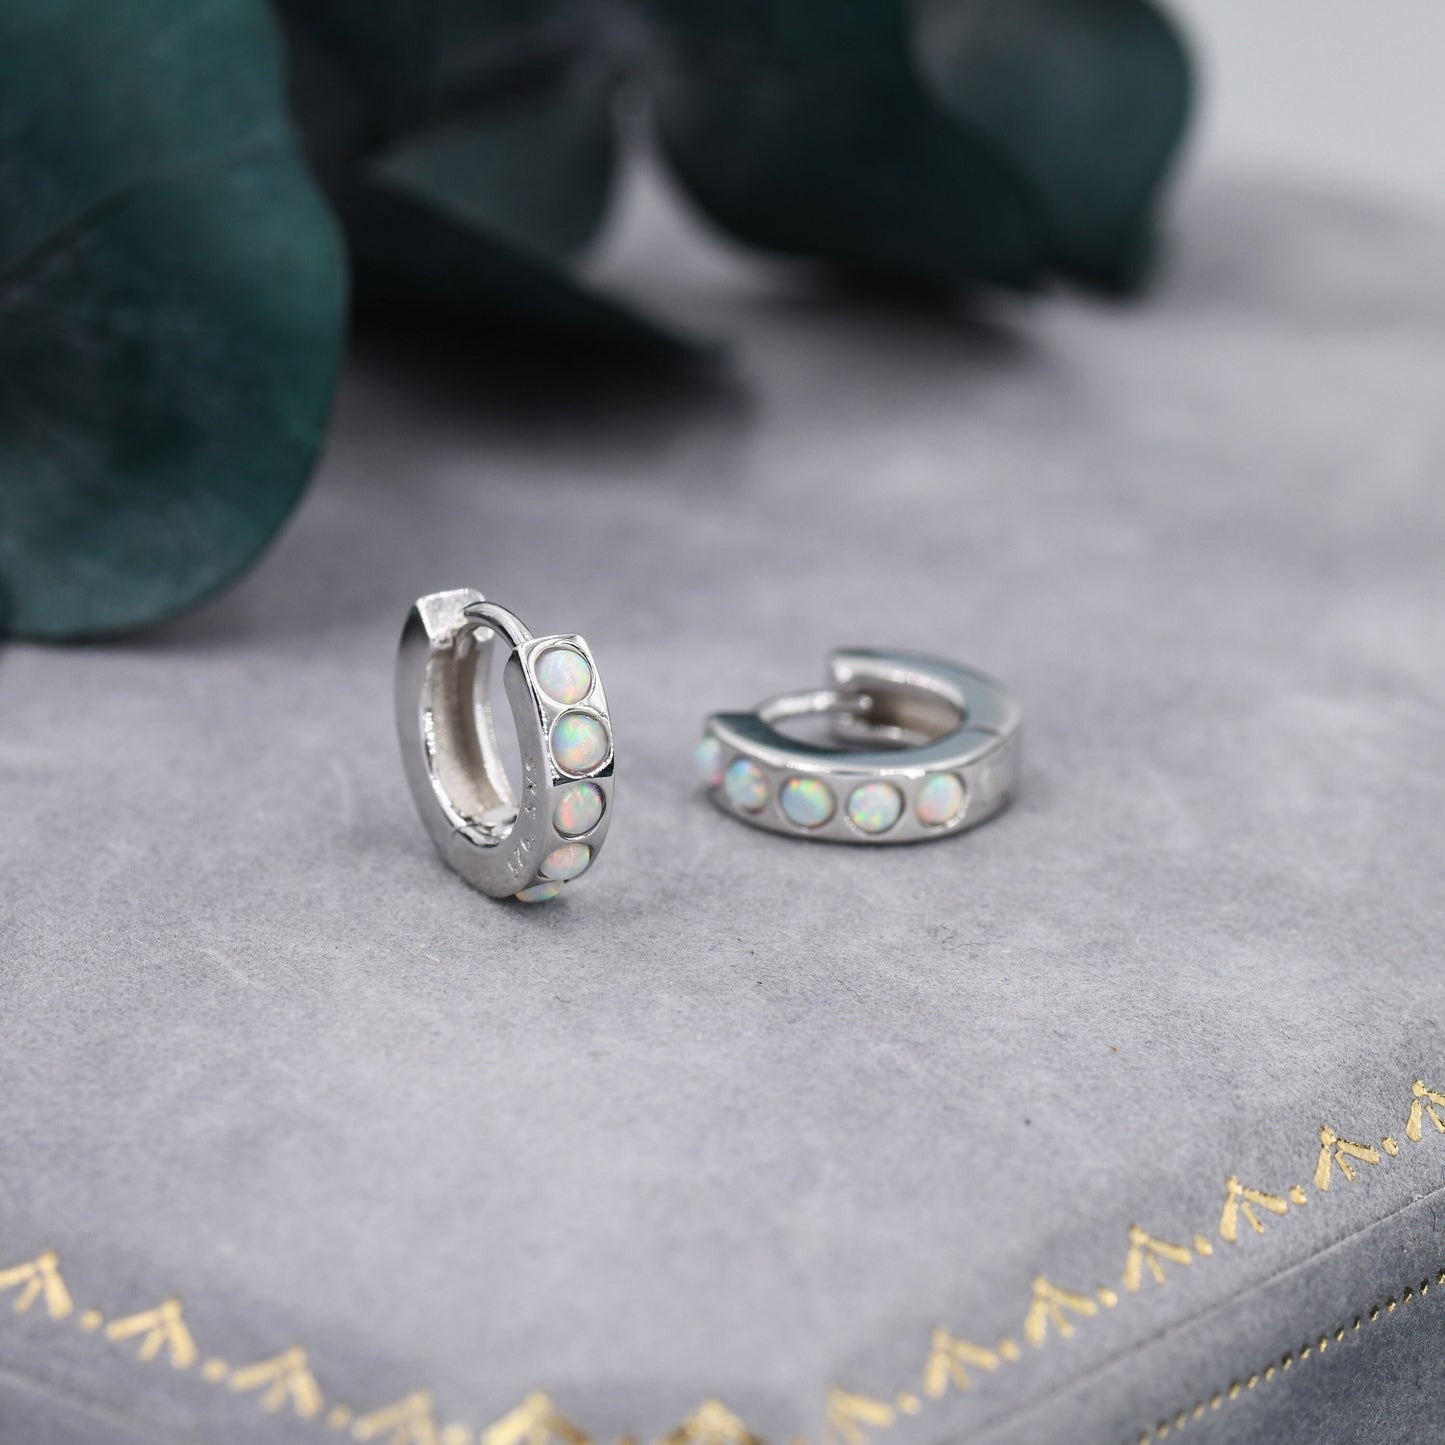 Sterling Silver Opal Huggie Hoop Earrings, Gold Hoop, Blue and White Opal, Minimalist Geometric Hoop Earrings